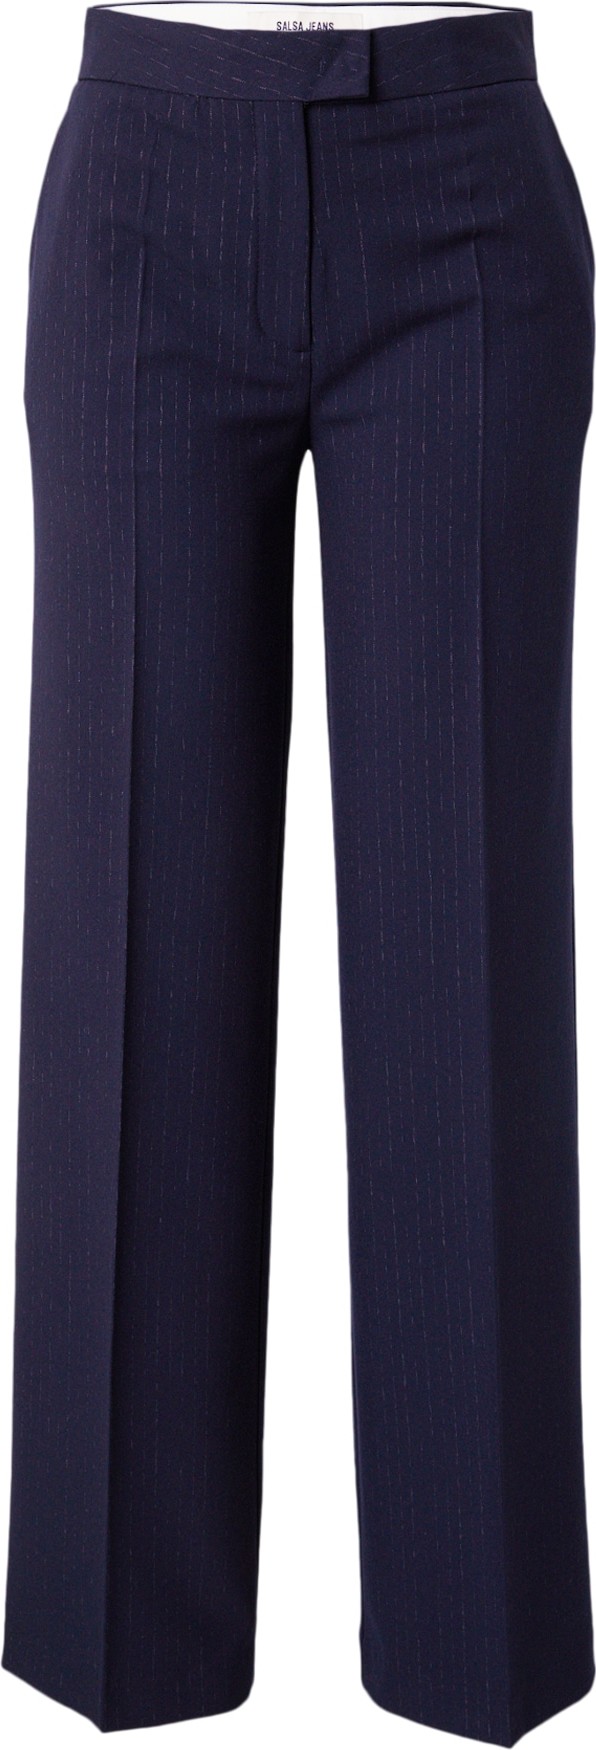 Kalhoty s puky Salsa Jeans marine modrá / námořnická modř